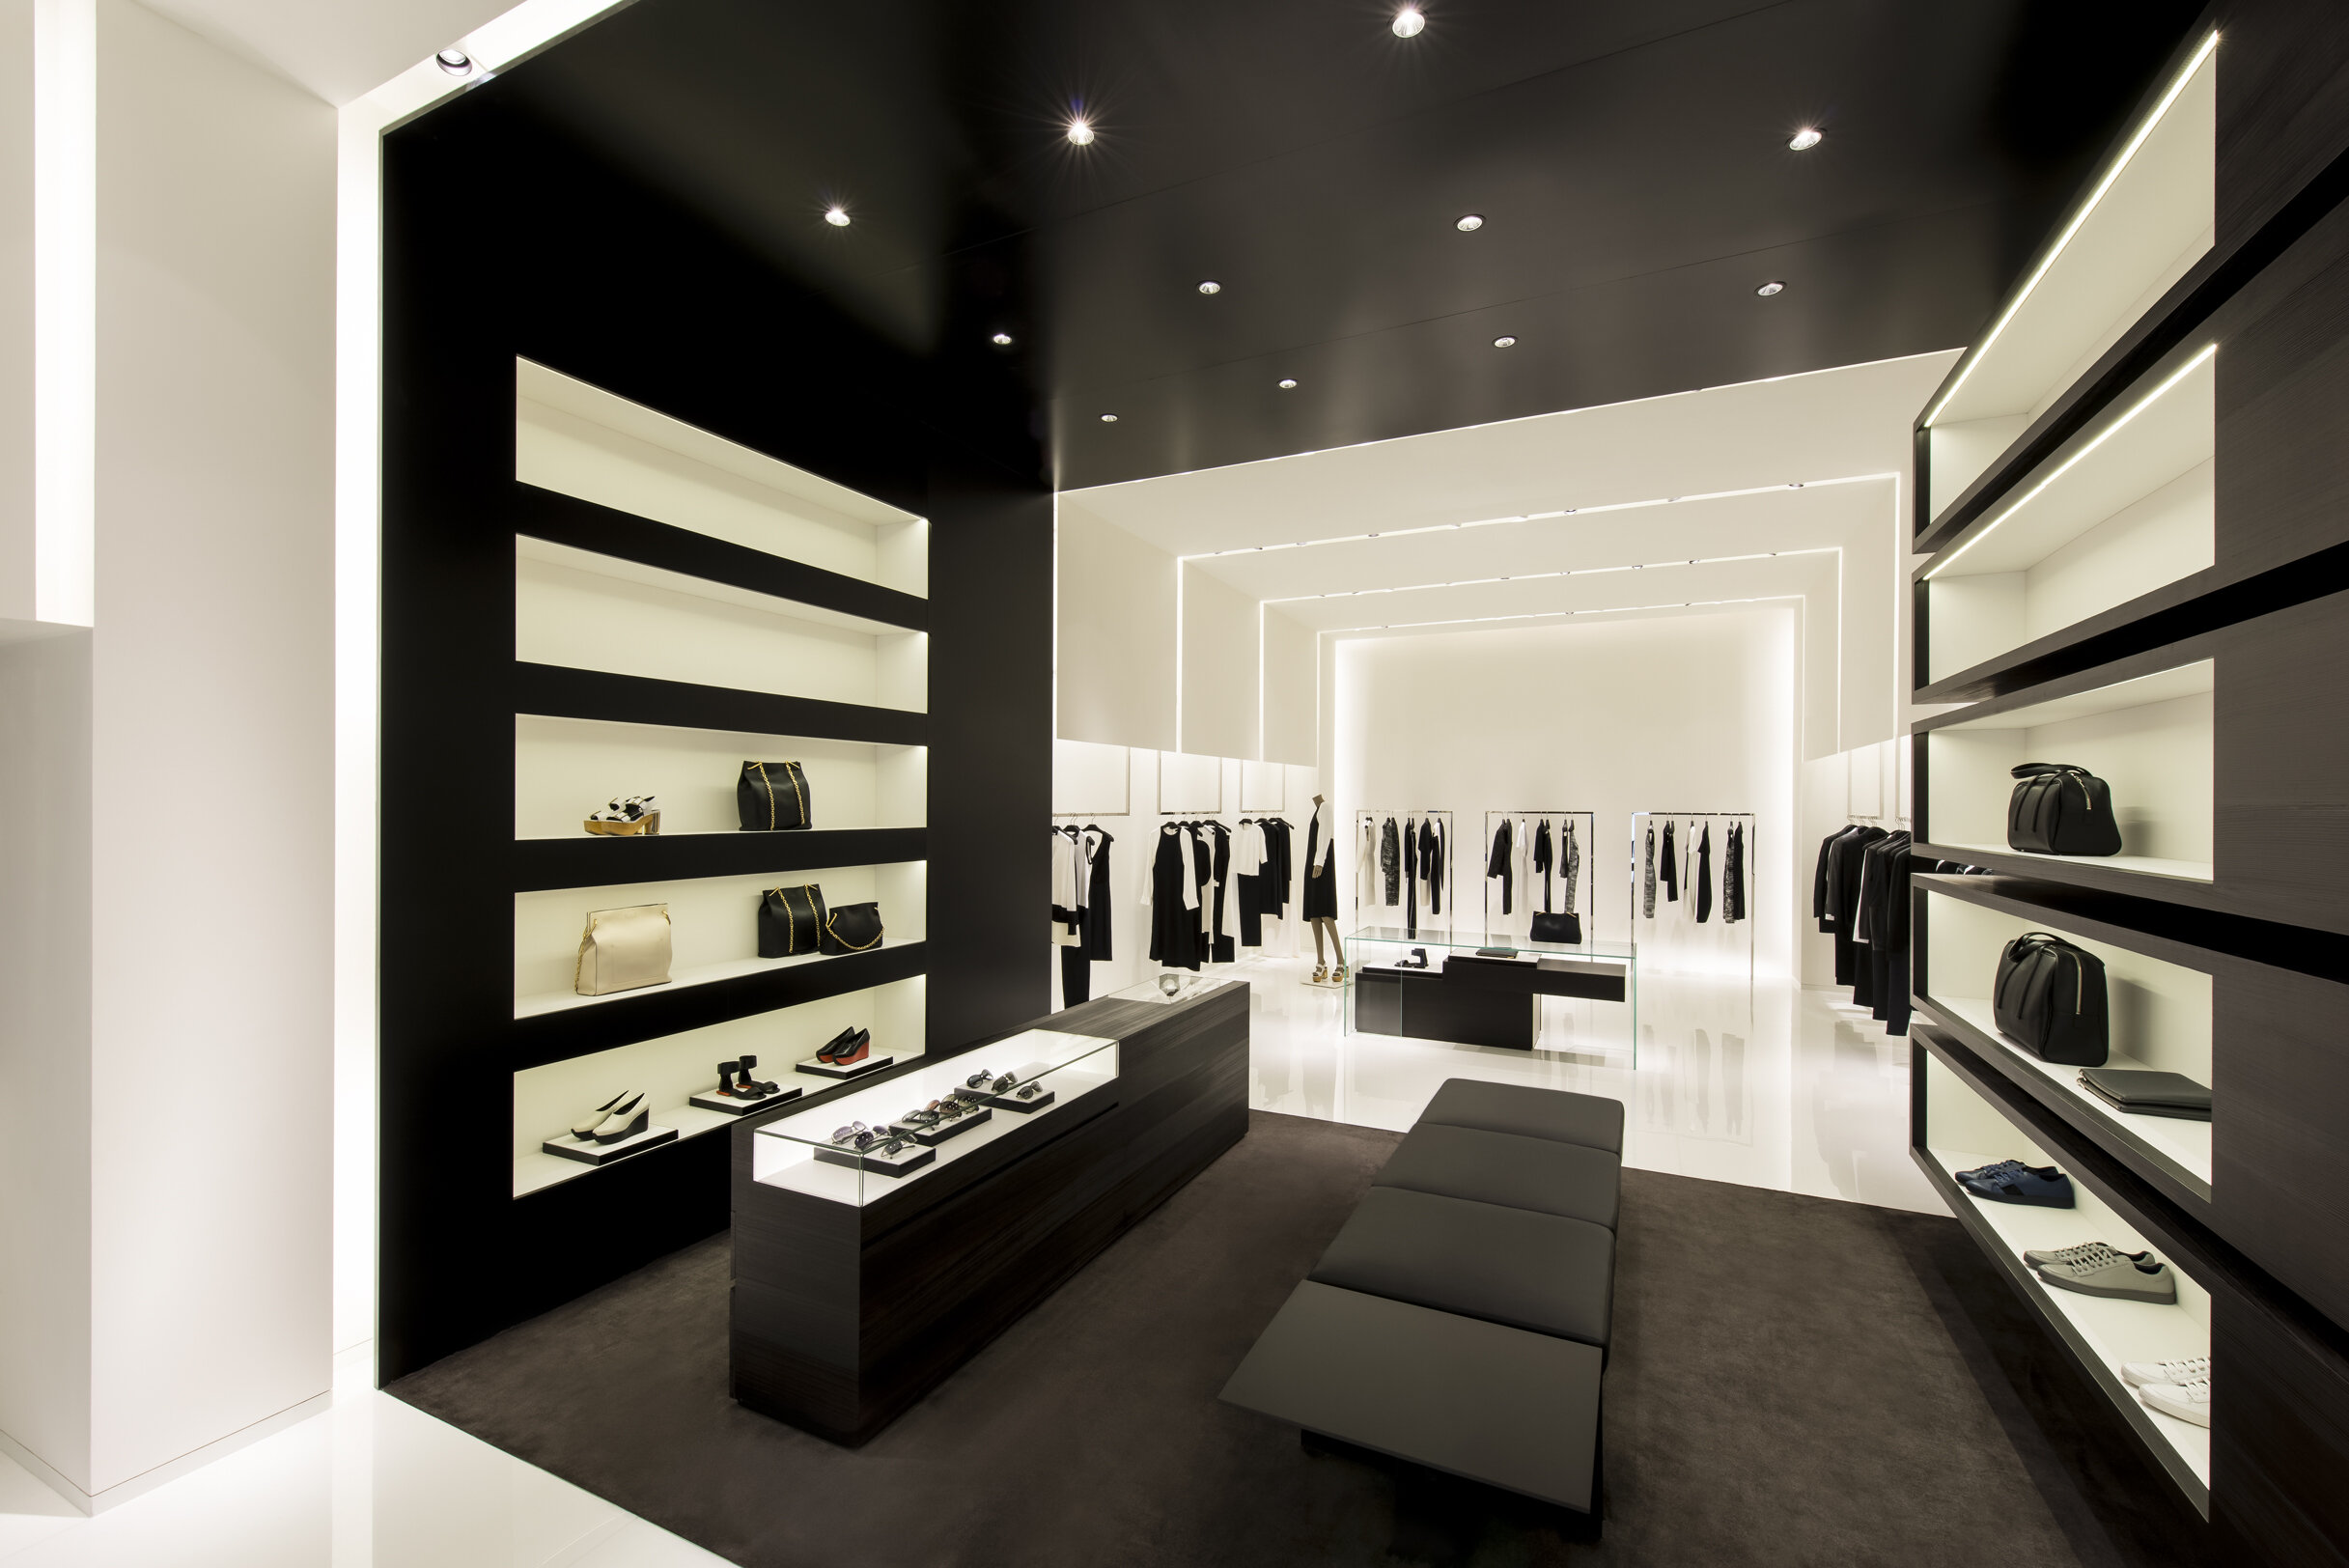 Calvin Klein - Retail Architecture